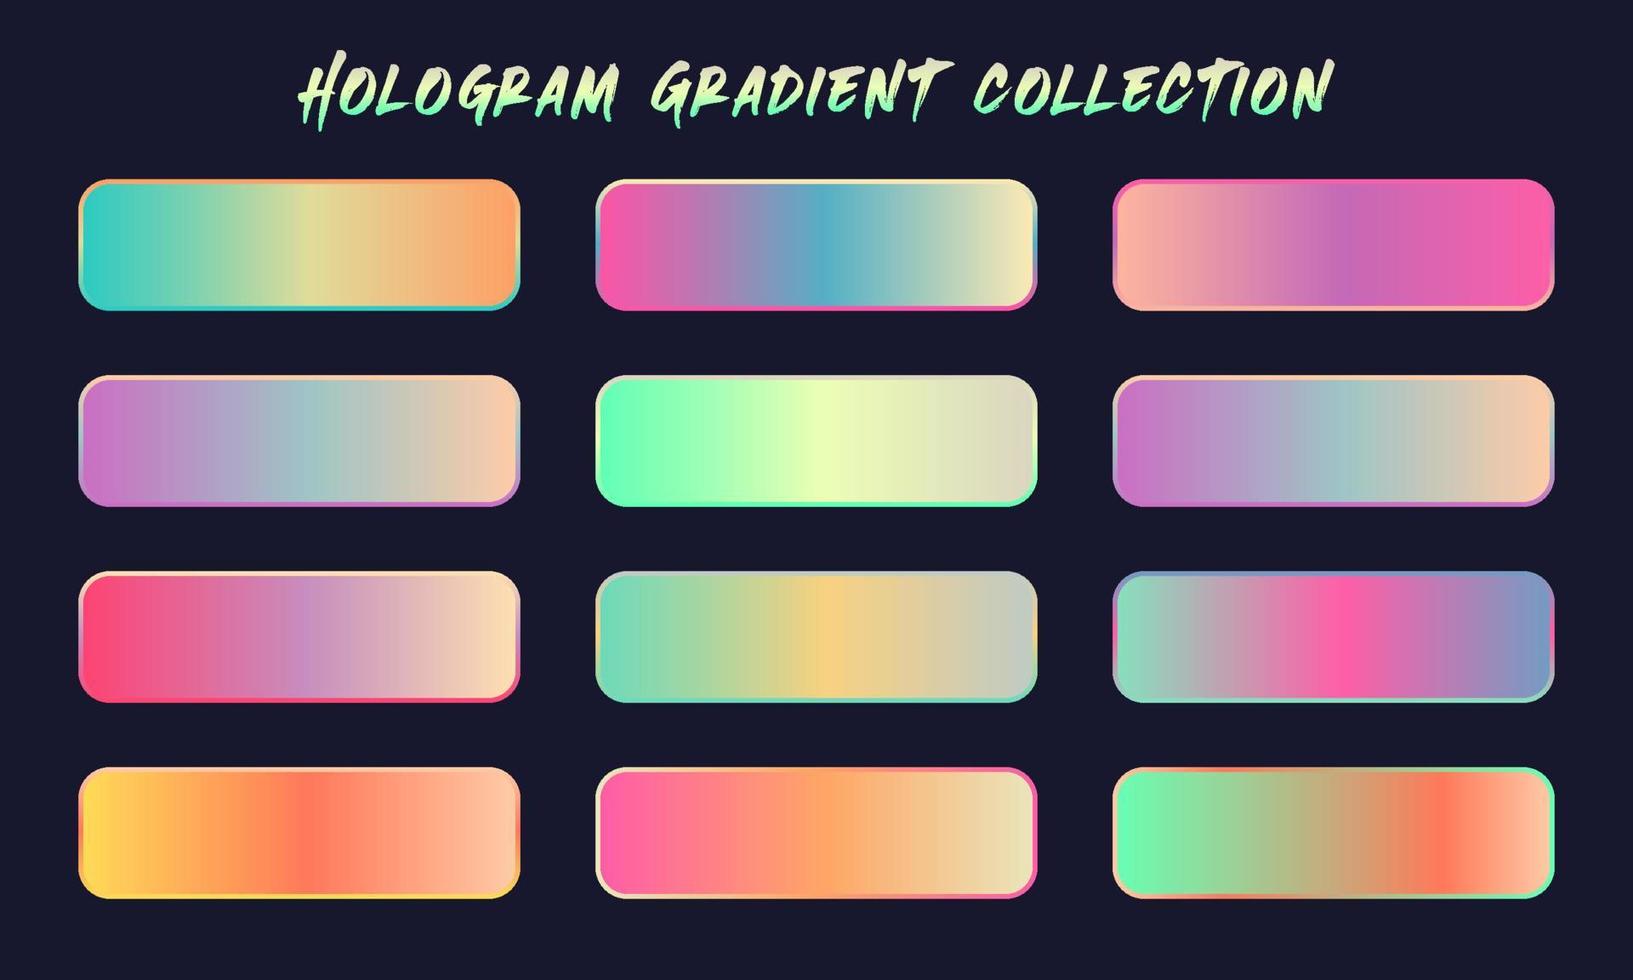 vector conjunto de muestras de gradientes de holograma